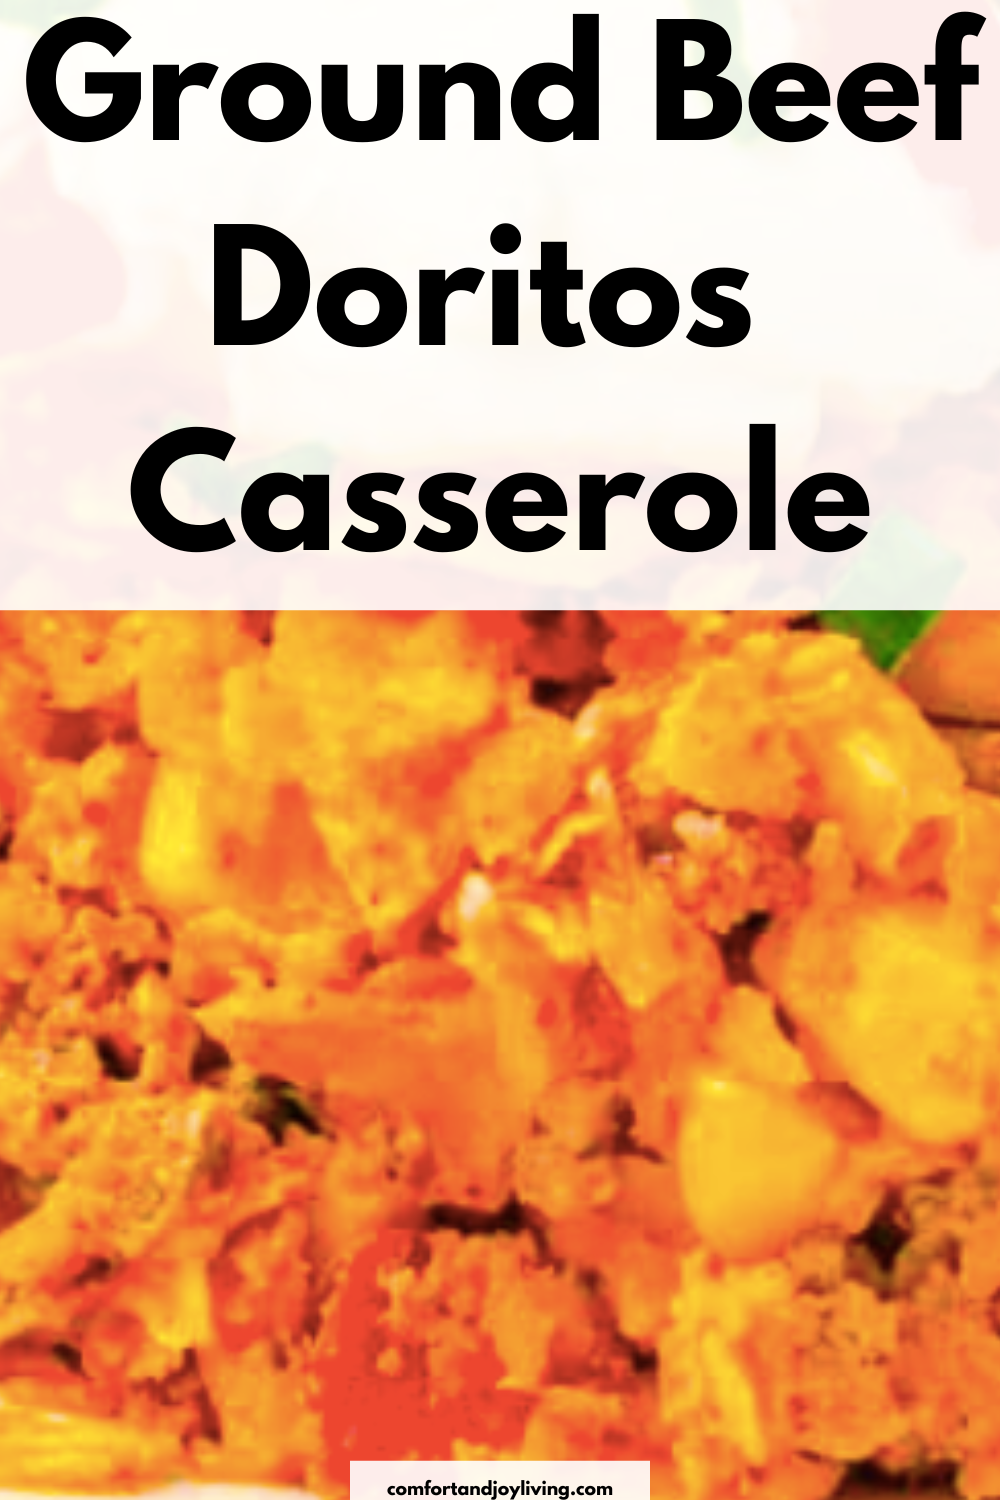 Ground Beef Doritos Casserole